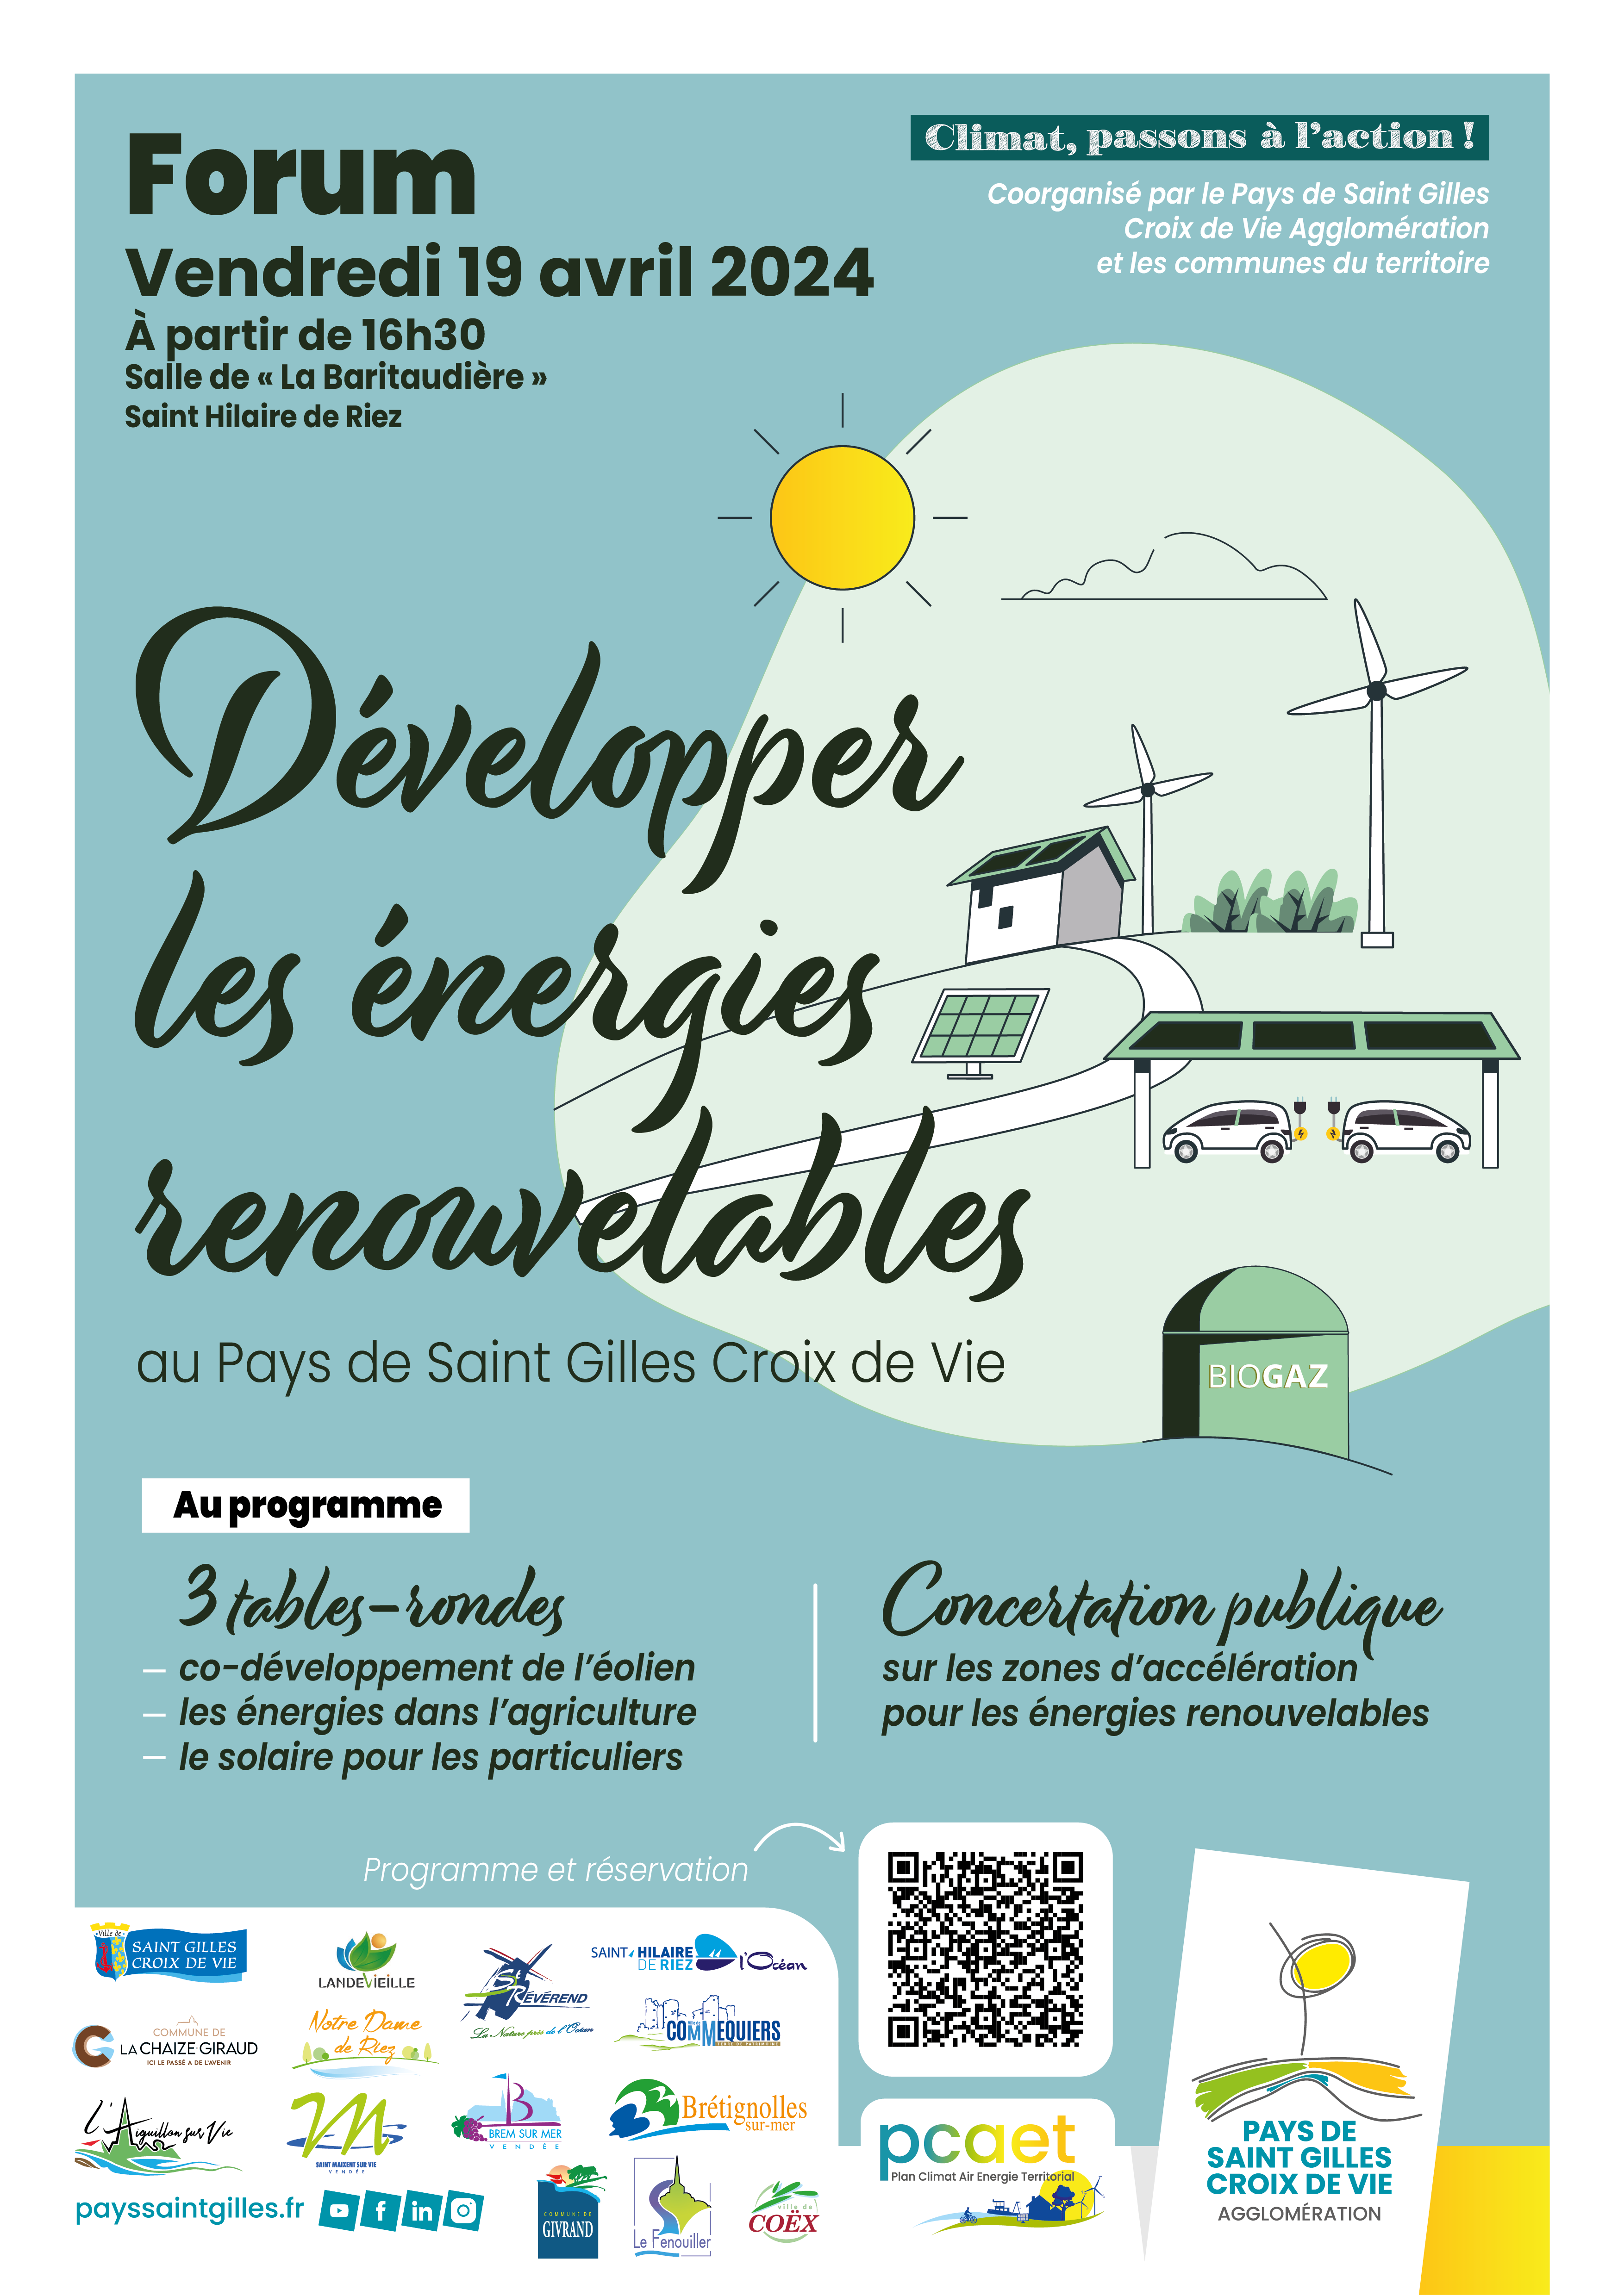 Forum des énergies renouvelables au Pays de Saint Gilles Croix de Vie